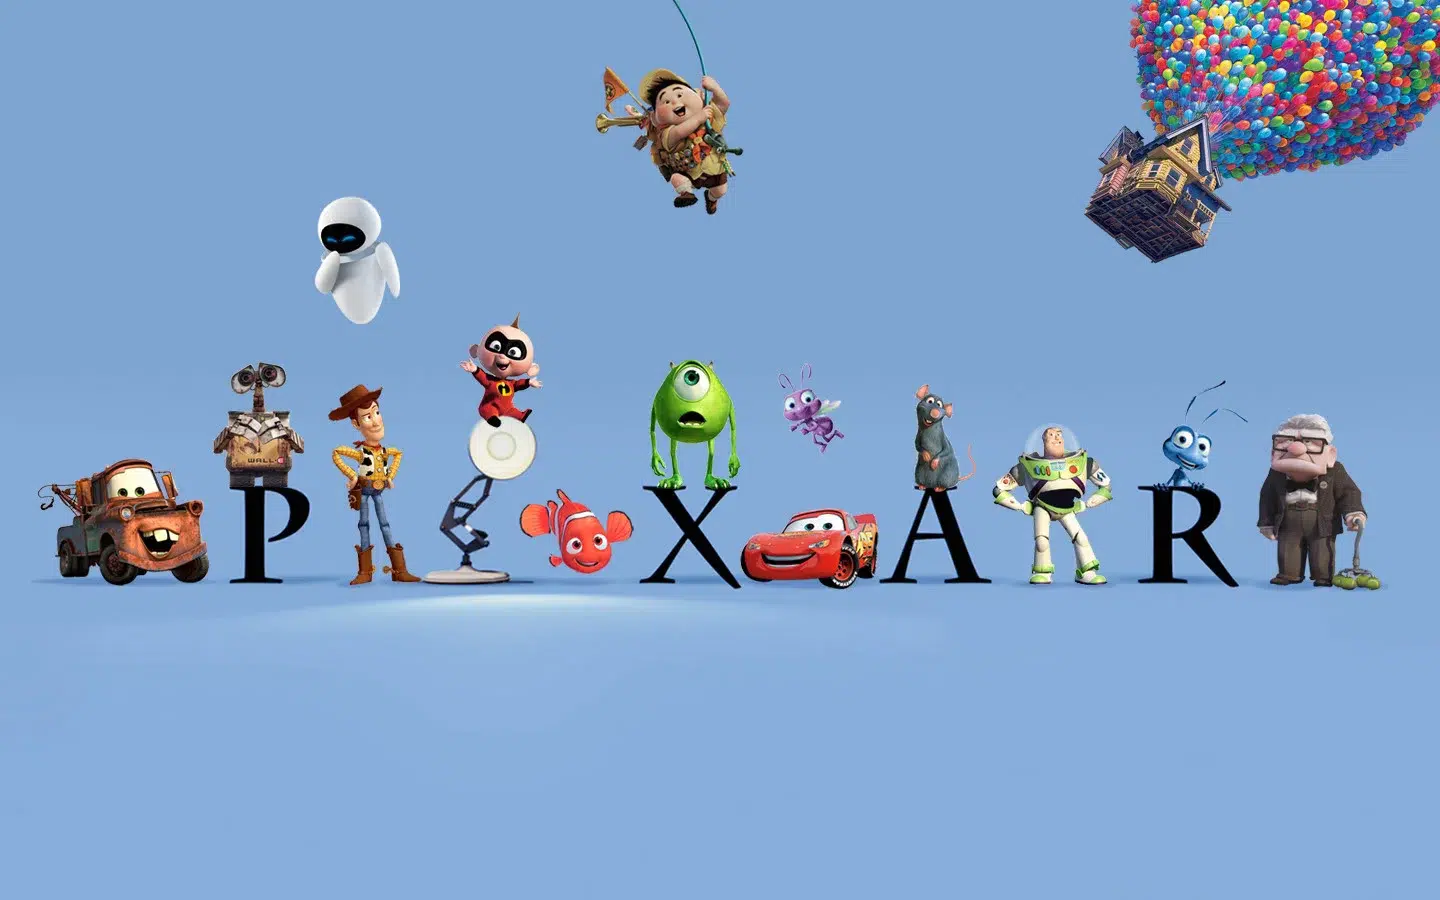 Disney pixar - confira o rankig dos melhores e piores filmes